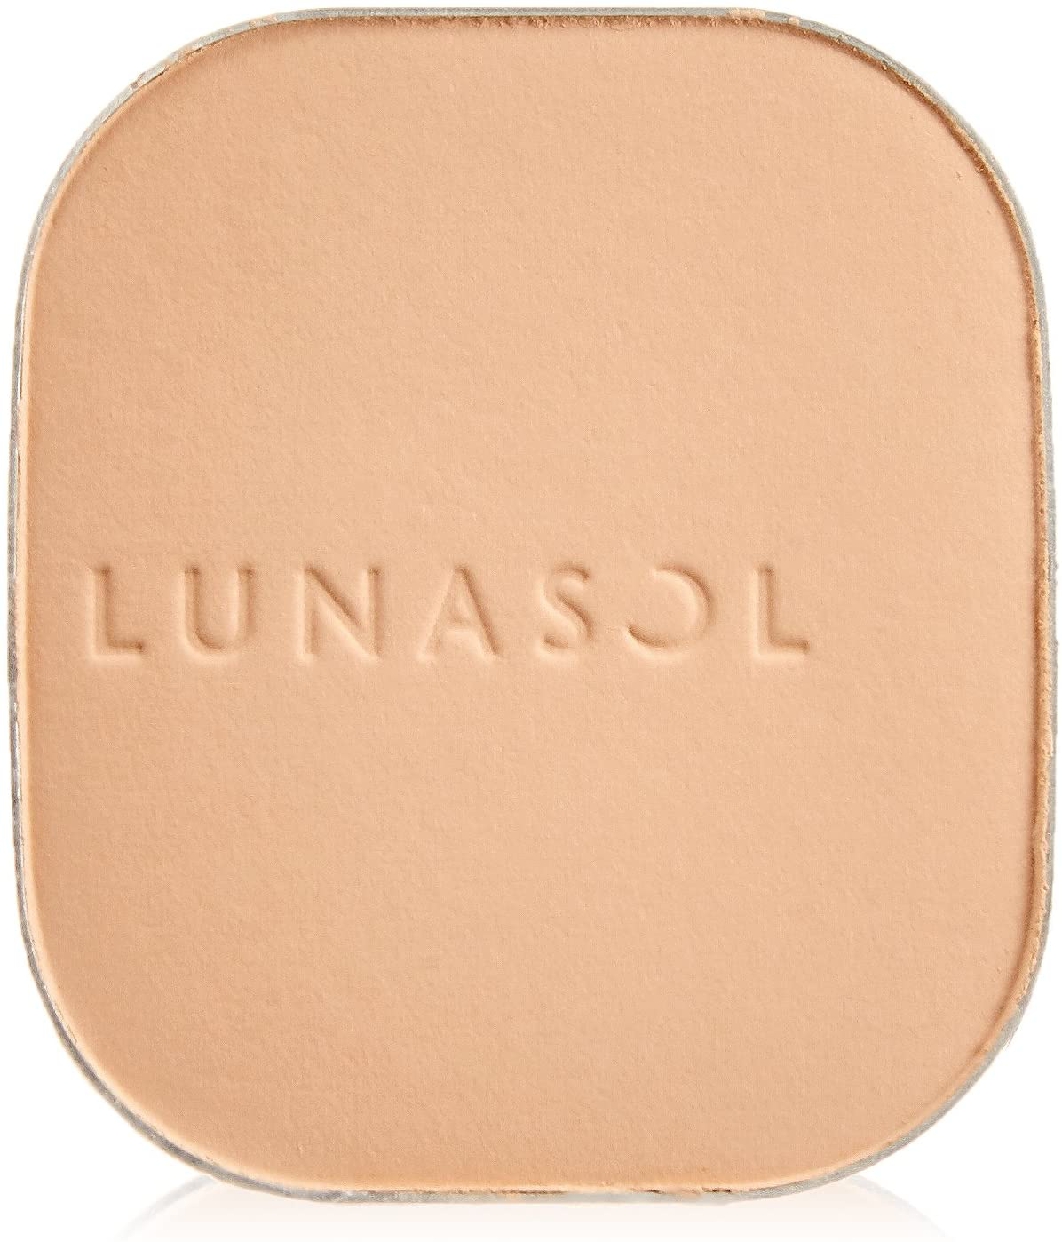 LUNASOL(ルナソル) スキンモデリングパウダーグロウの商品画像1 